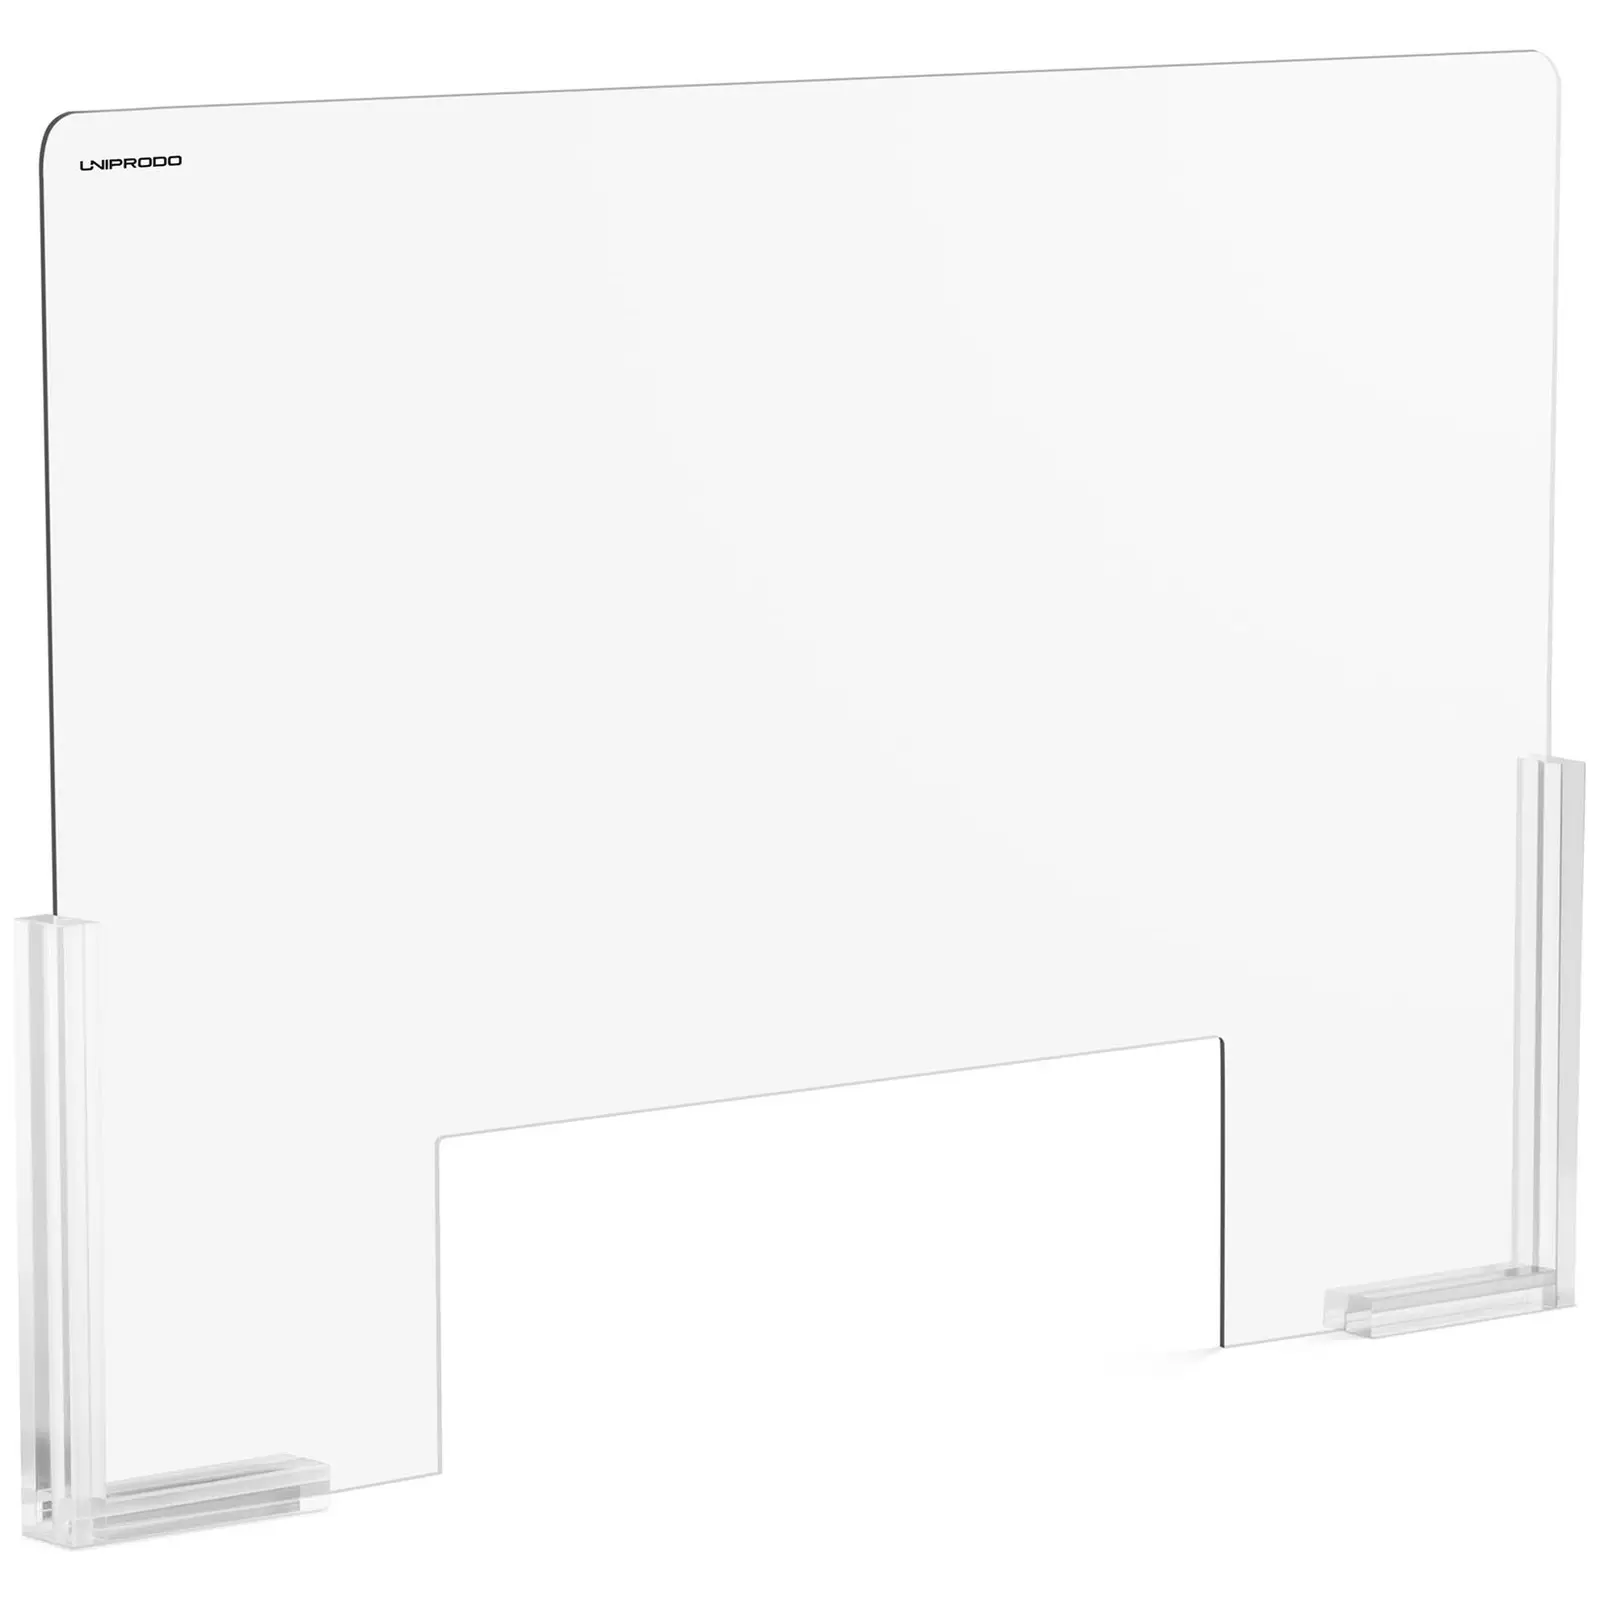 Ochranná přepážka - 95 x 65 cm - akrylátové sklo - výdejové okénko 50 x 16 cm